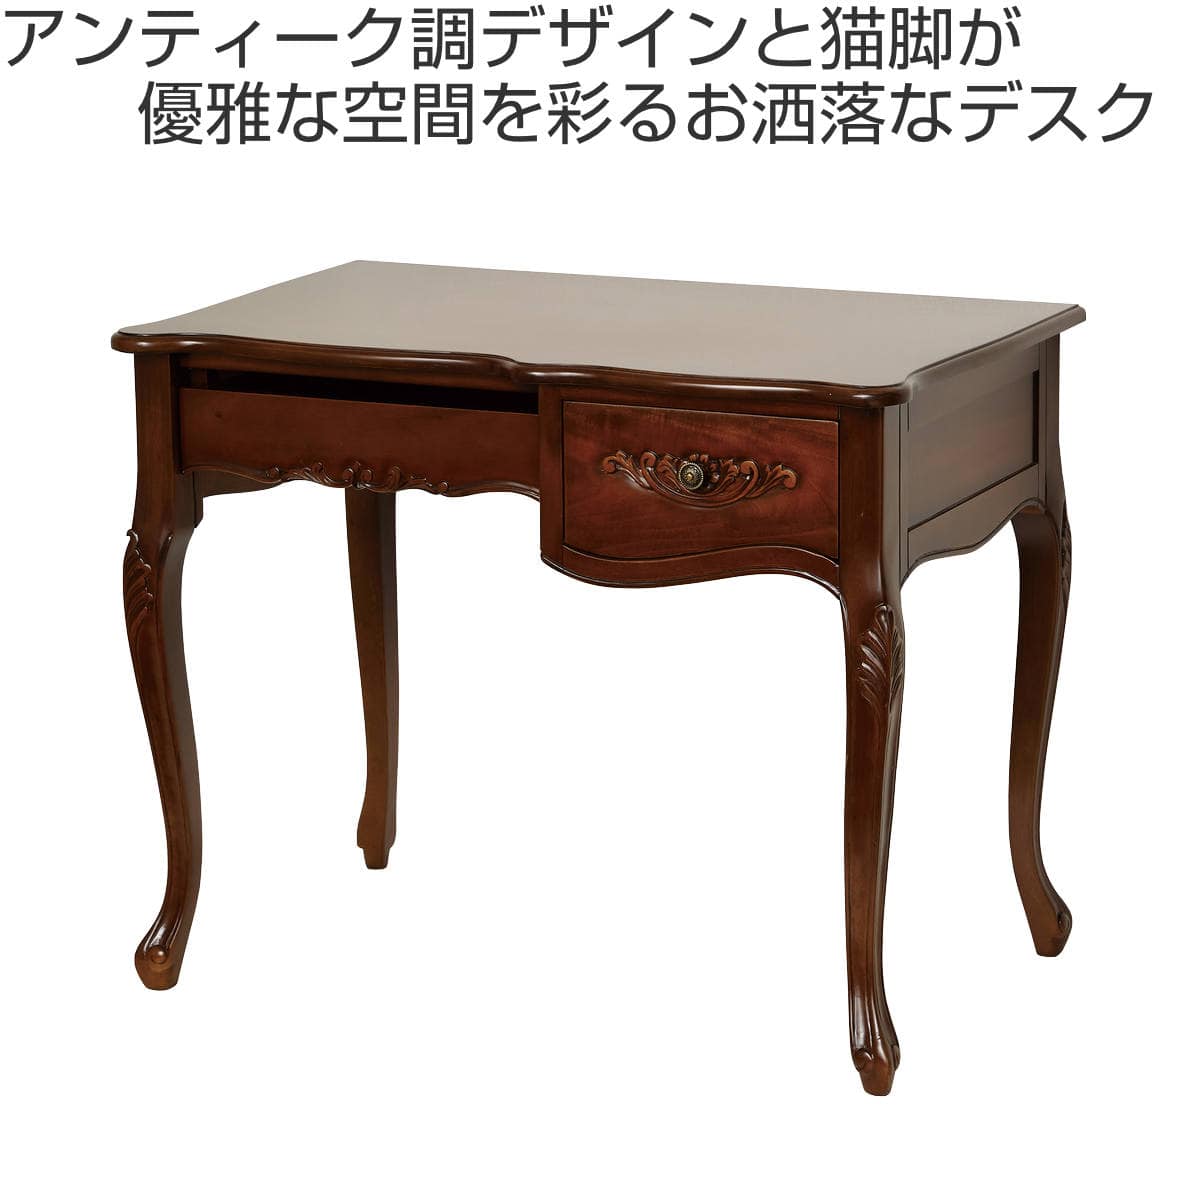 猫足アンティークデスク/Antique desk with carved legs - テーブル